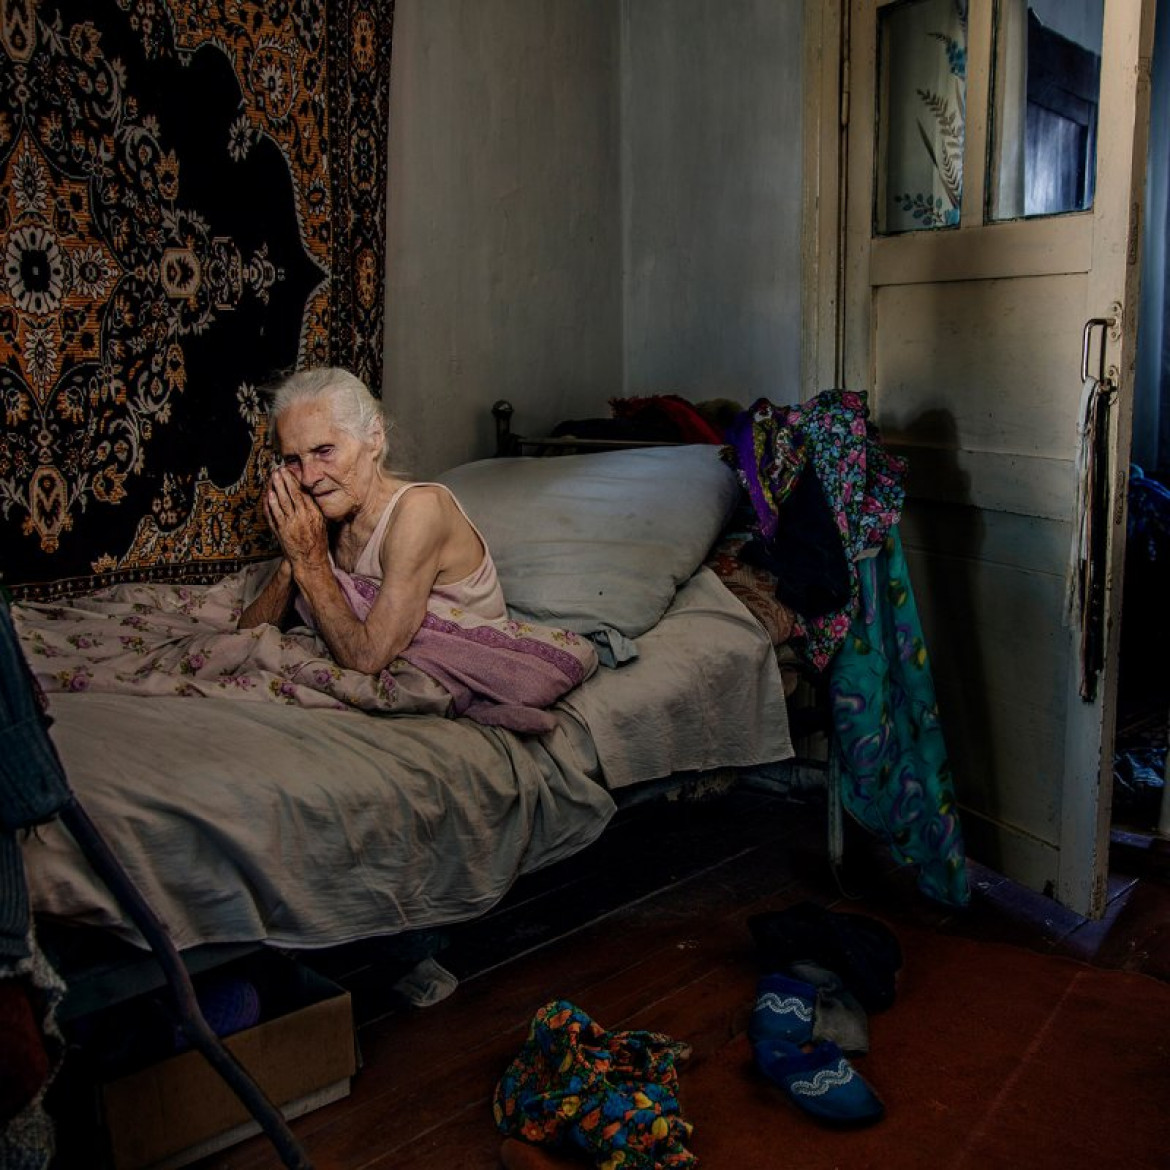 fot. Viktoria Sorochinski, z cyklu " Land of No-return"

Viktoria dokumentuje wioski okalające Kijów już od 10 lat, poszukując rodzinnych korzeni i wspomnień z dzieciństwa. Jednak wraz z wyludnianiem się tych obszarów zanika również ich tradycja i kultura.